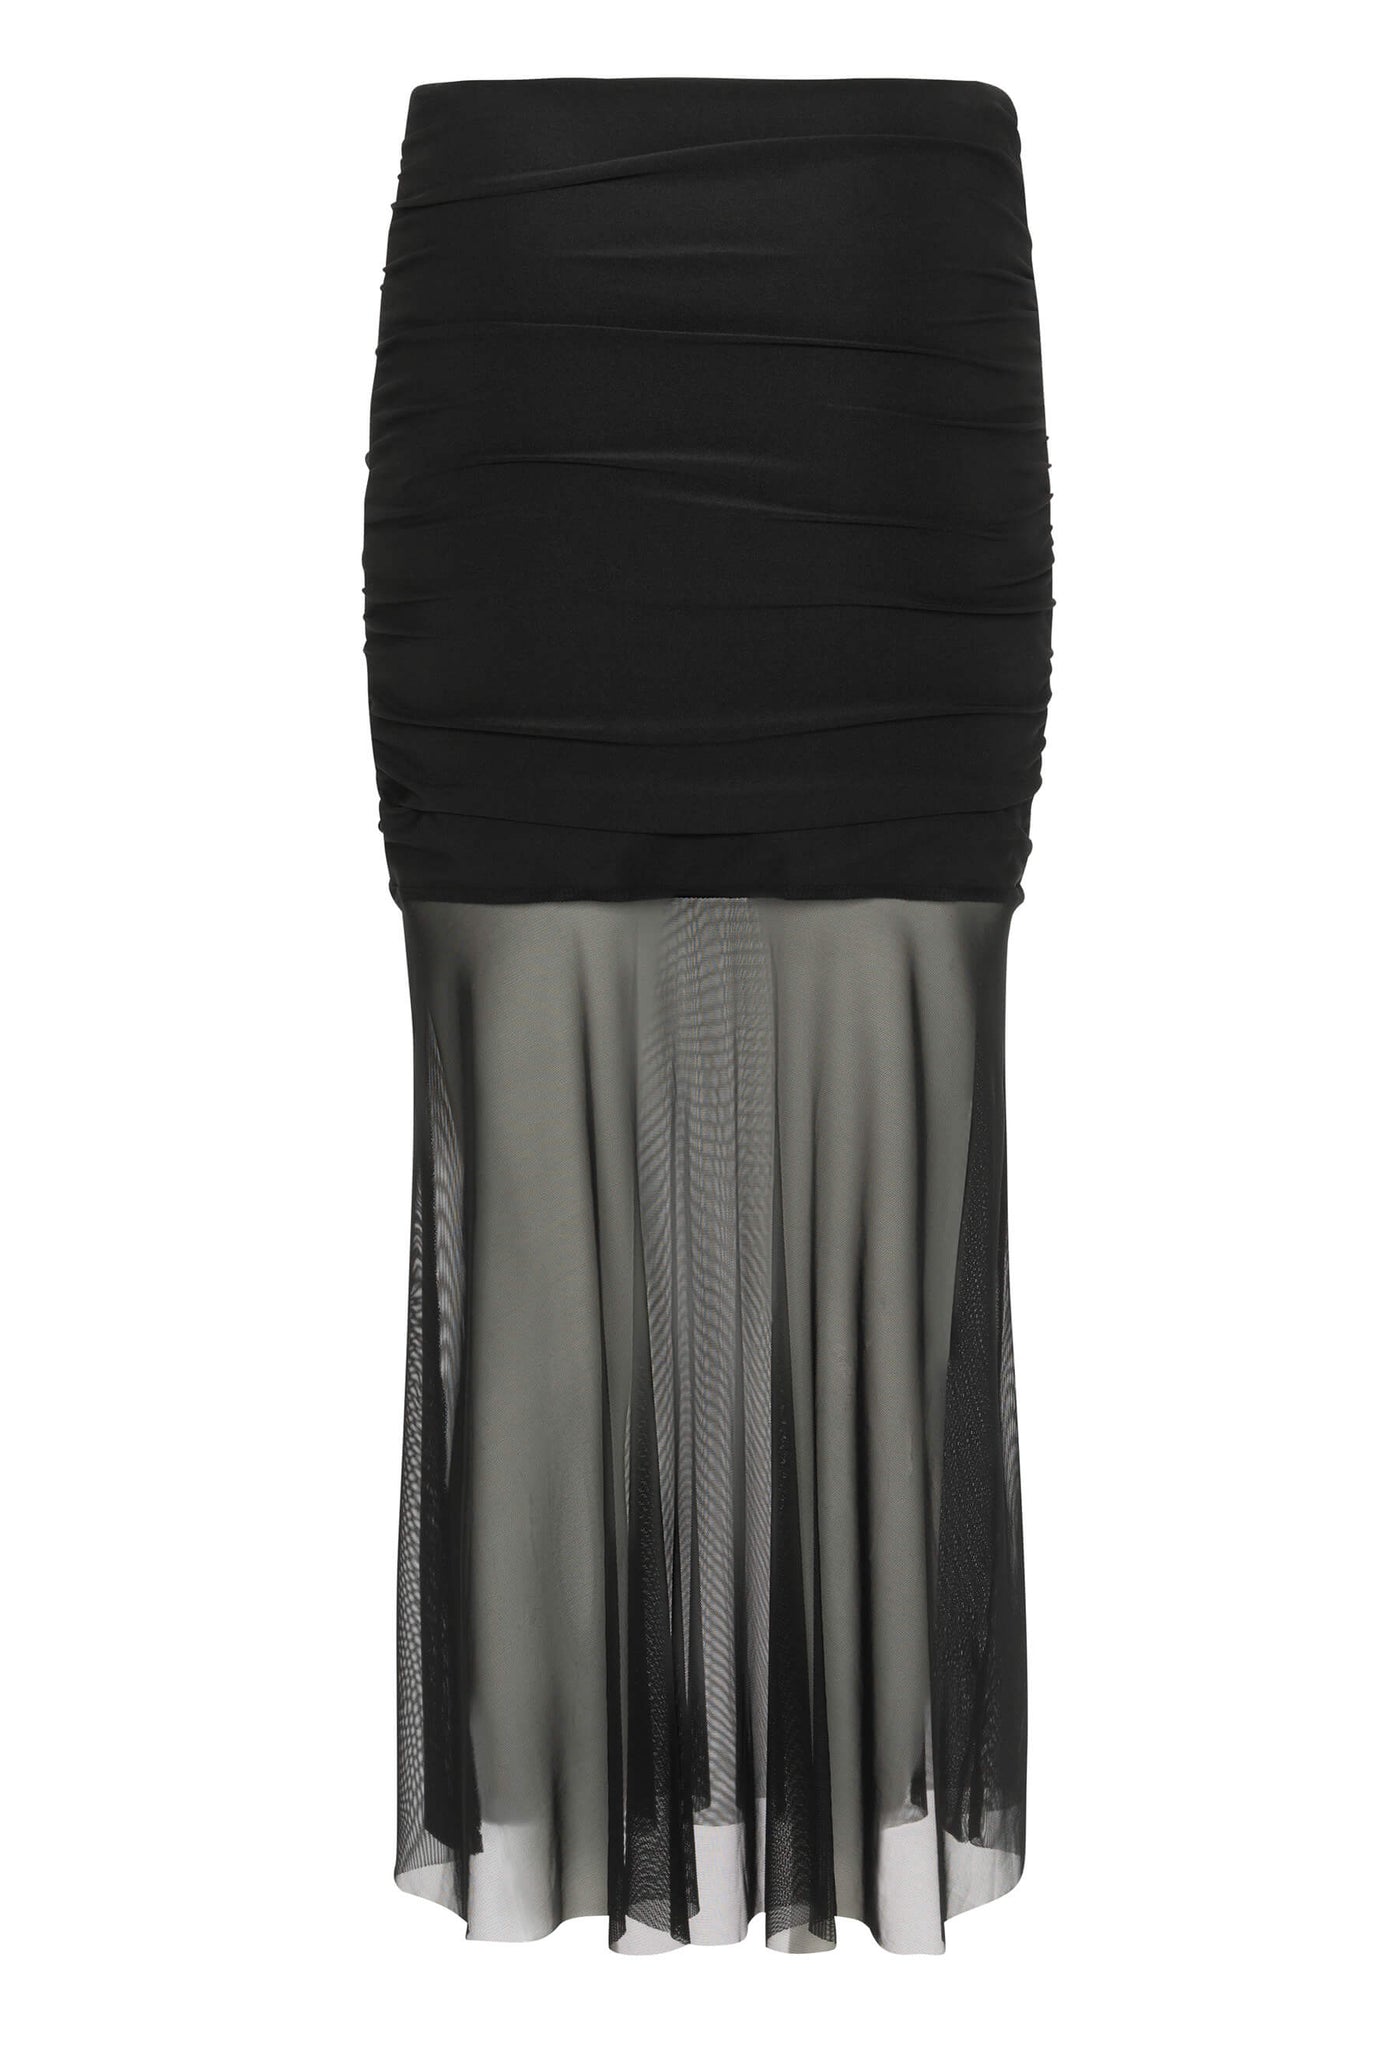 Jupe Éliane avec tissu imitation nylon noire, peut s'adapter en robe. Produit québécois fait par KSL!